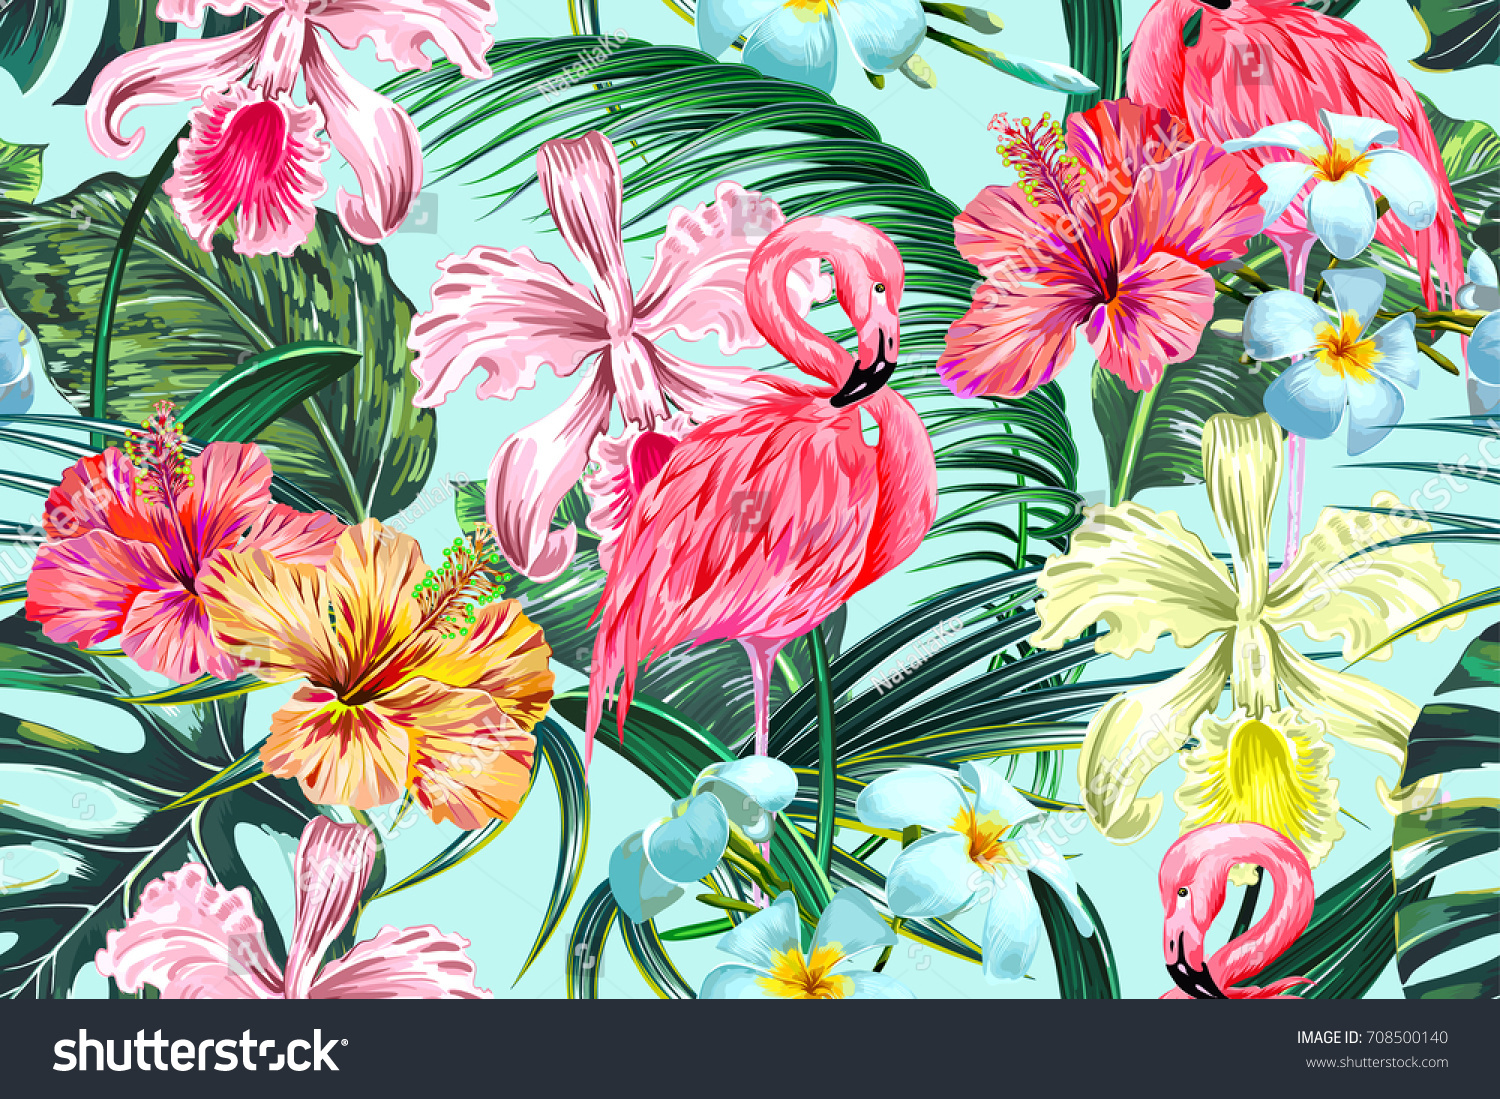 エキゾチックな花 ヤシの葉 ジャングルの葉 ハイビスカス ランの花 ピンクのフラミンゴスを持つ花柄のシームレスなベクター画像熱帯のパターン背景 ボタニカル壁紙 ハワイ風のイラトス のベクター画像素材 ロイヤリティフリー 708500140